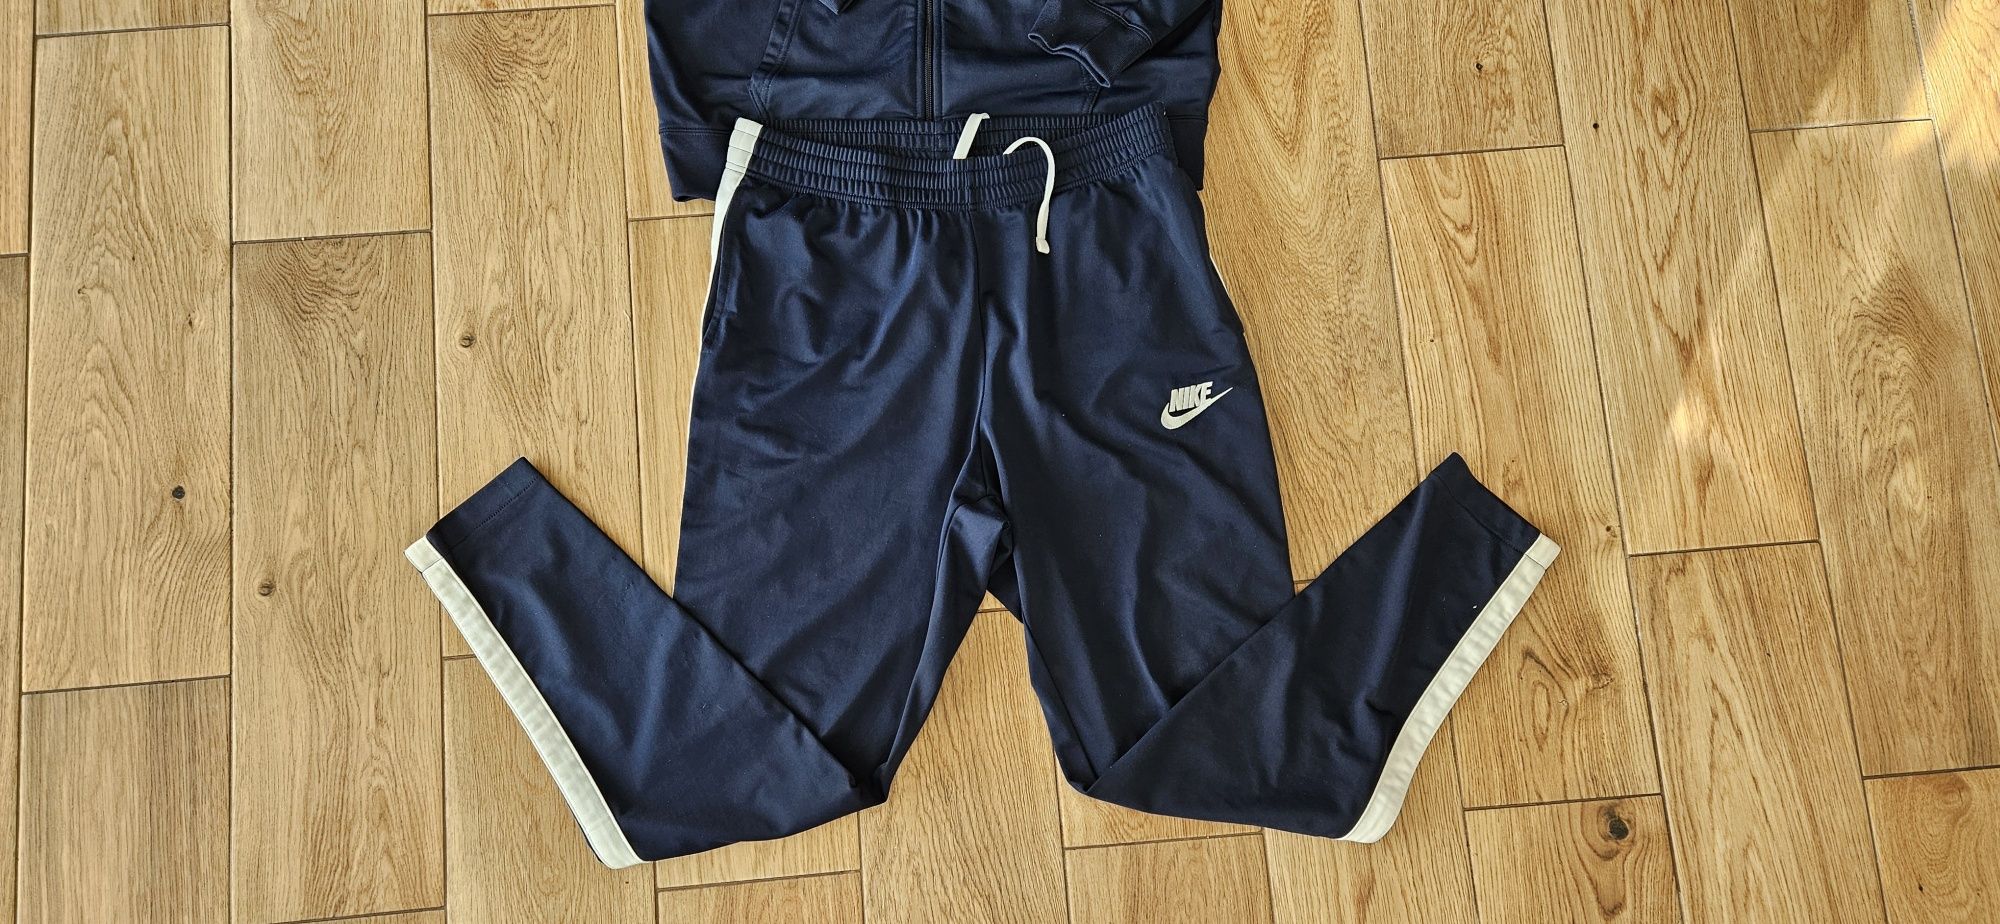 Granatowy dres Nike rozmiar L na wzrost 178/182 cm